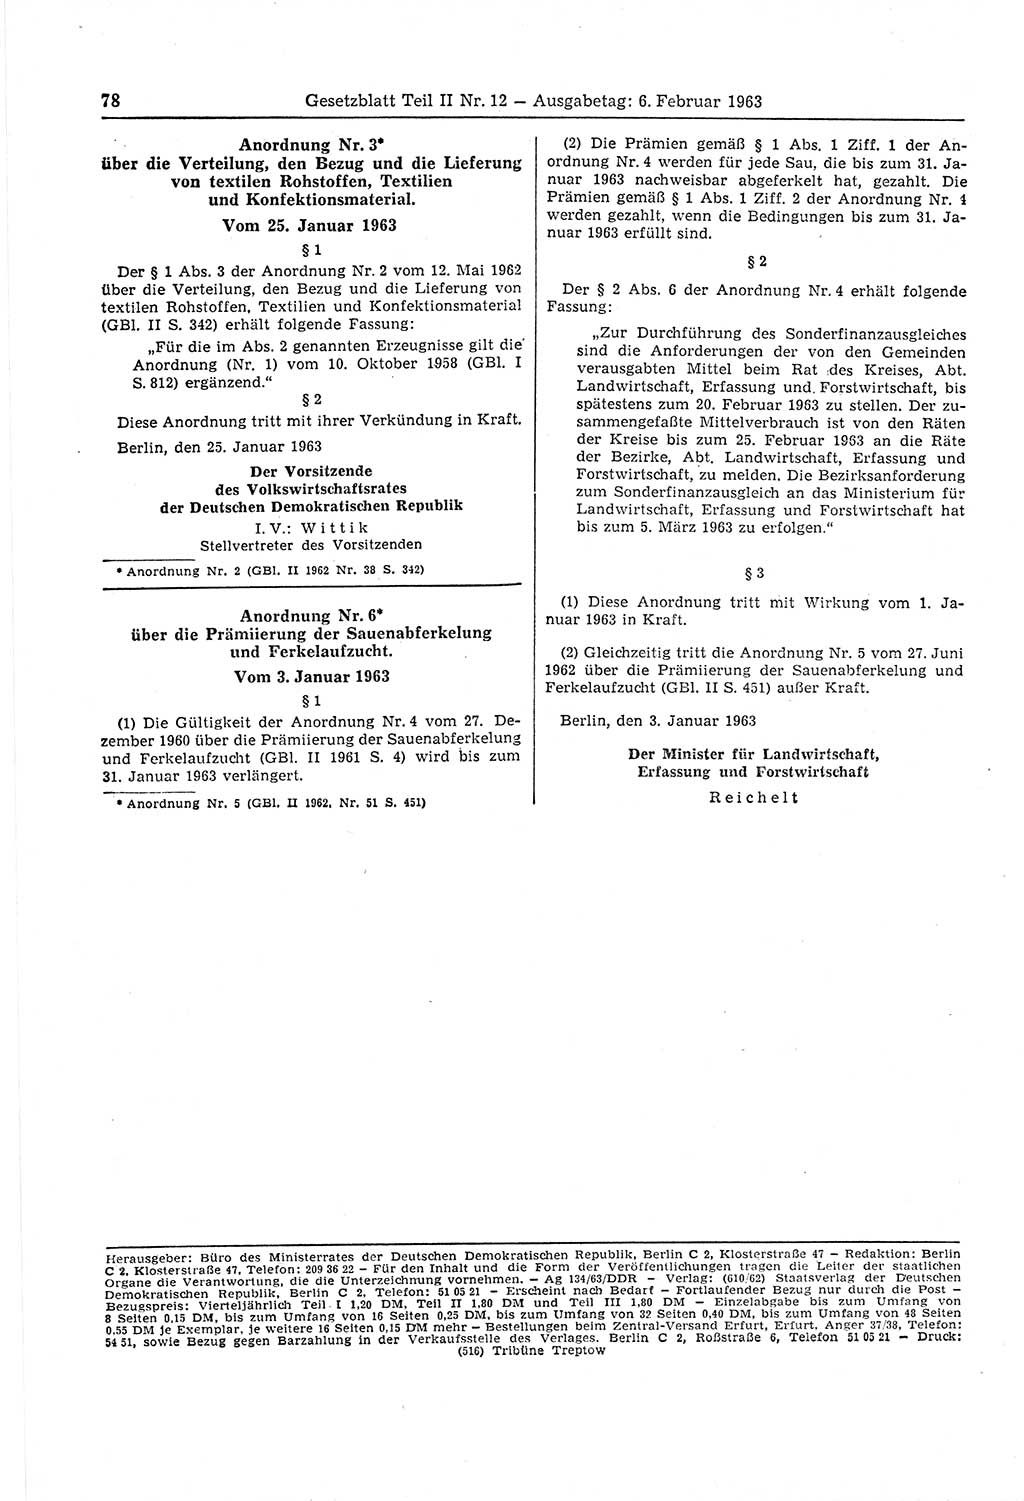 Gesetzblatt (GBl.) der Deutschen Demokratischen Republik (DDR) Teil ⅠⅠ 1963, Seite 78 (GBl. DDR ⅠⅠ 1963, S. 78)